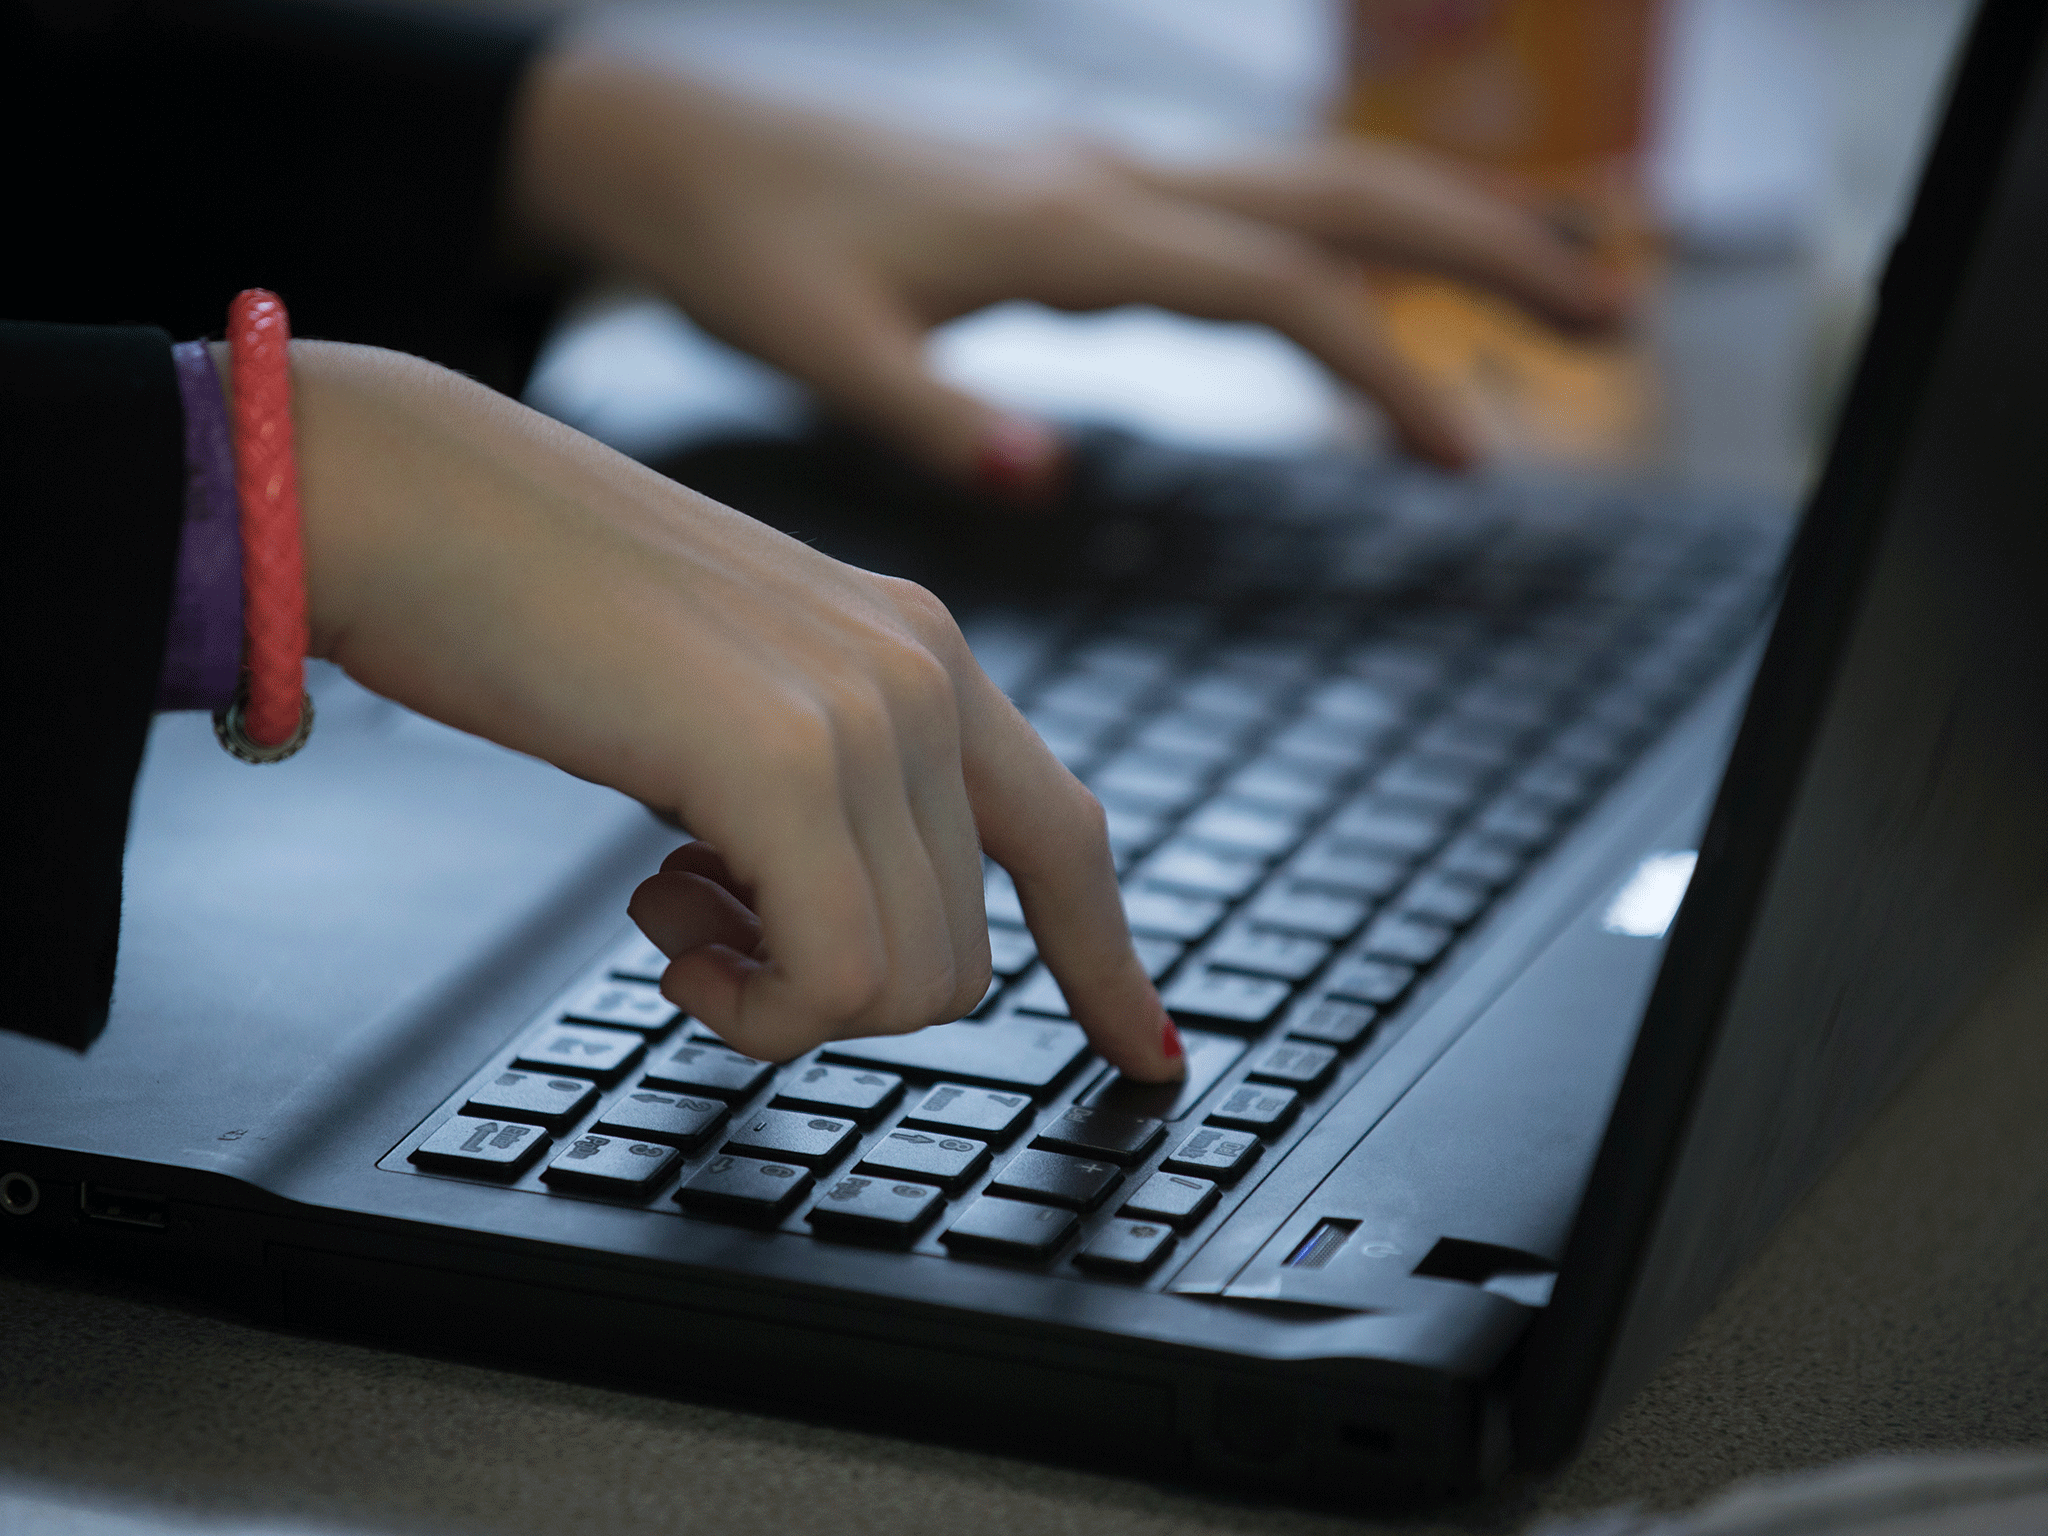 The schoolgirl used her school's computers